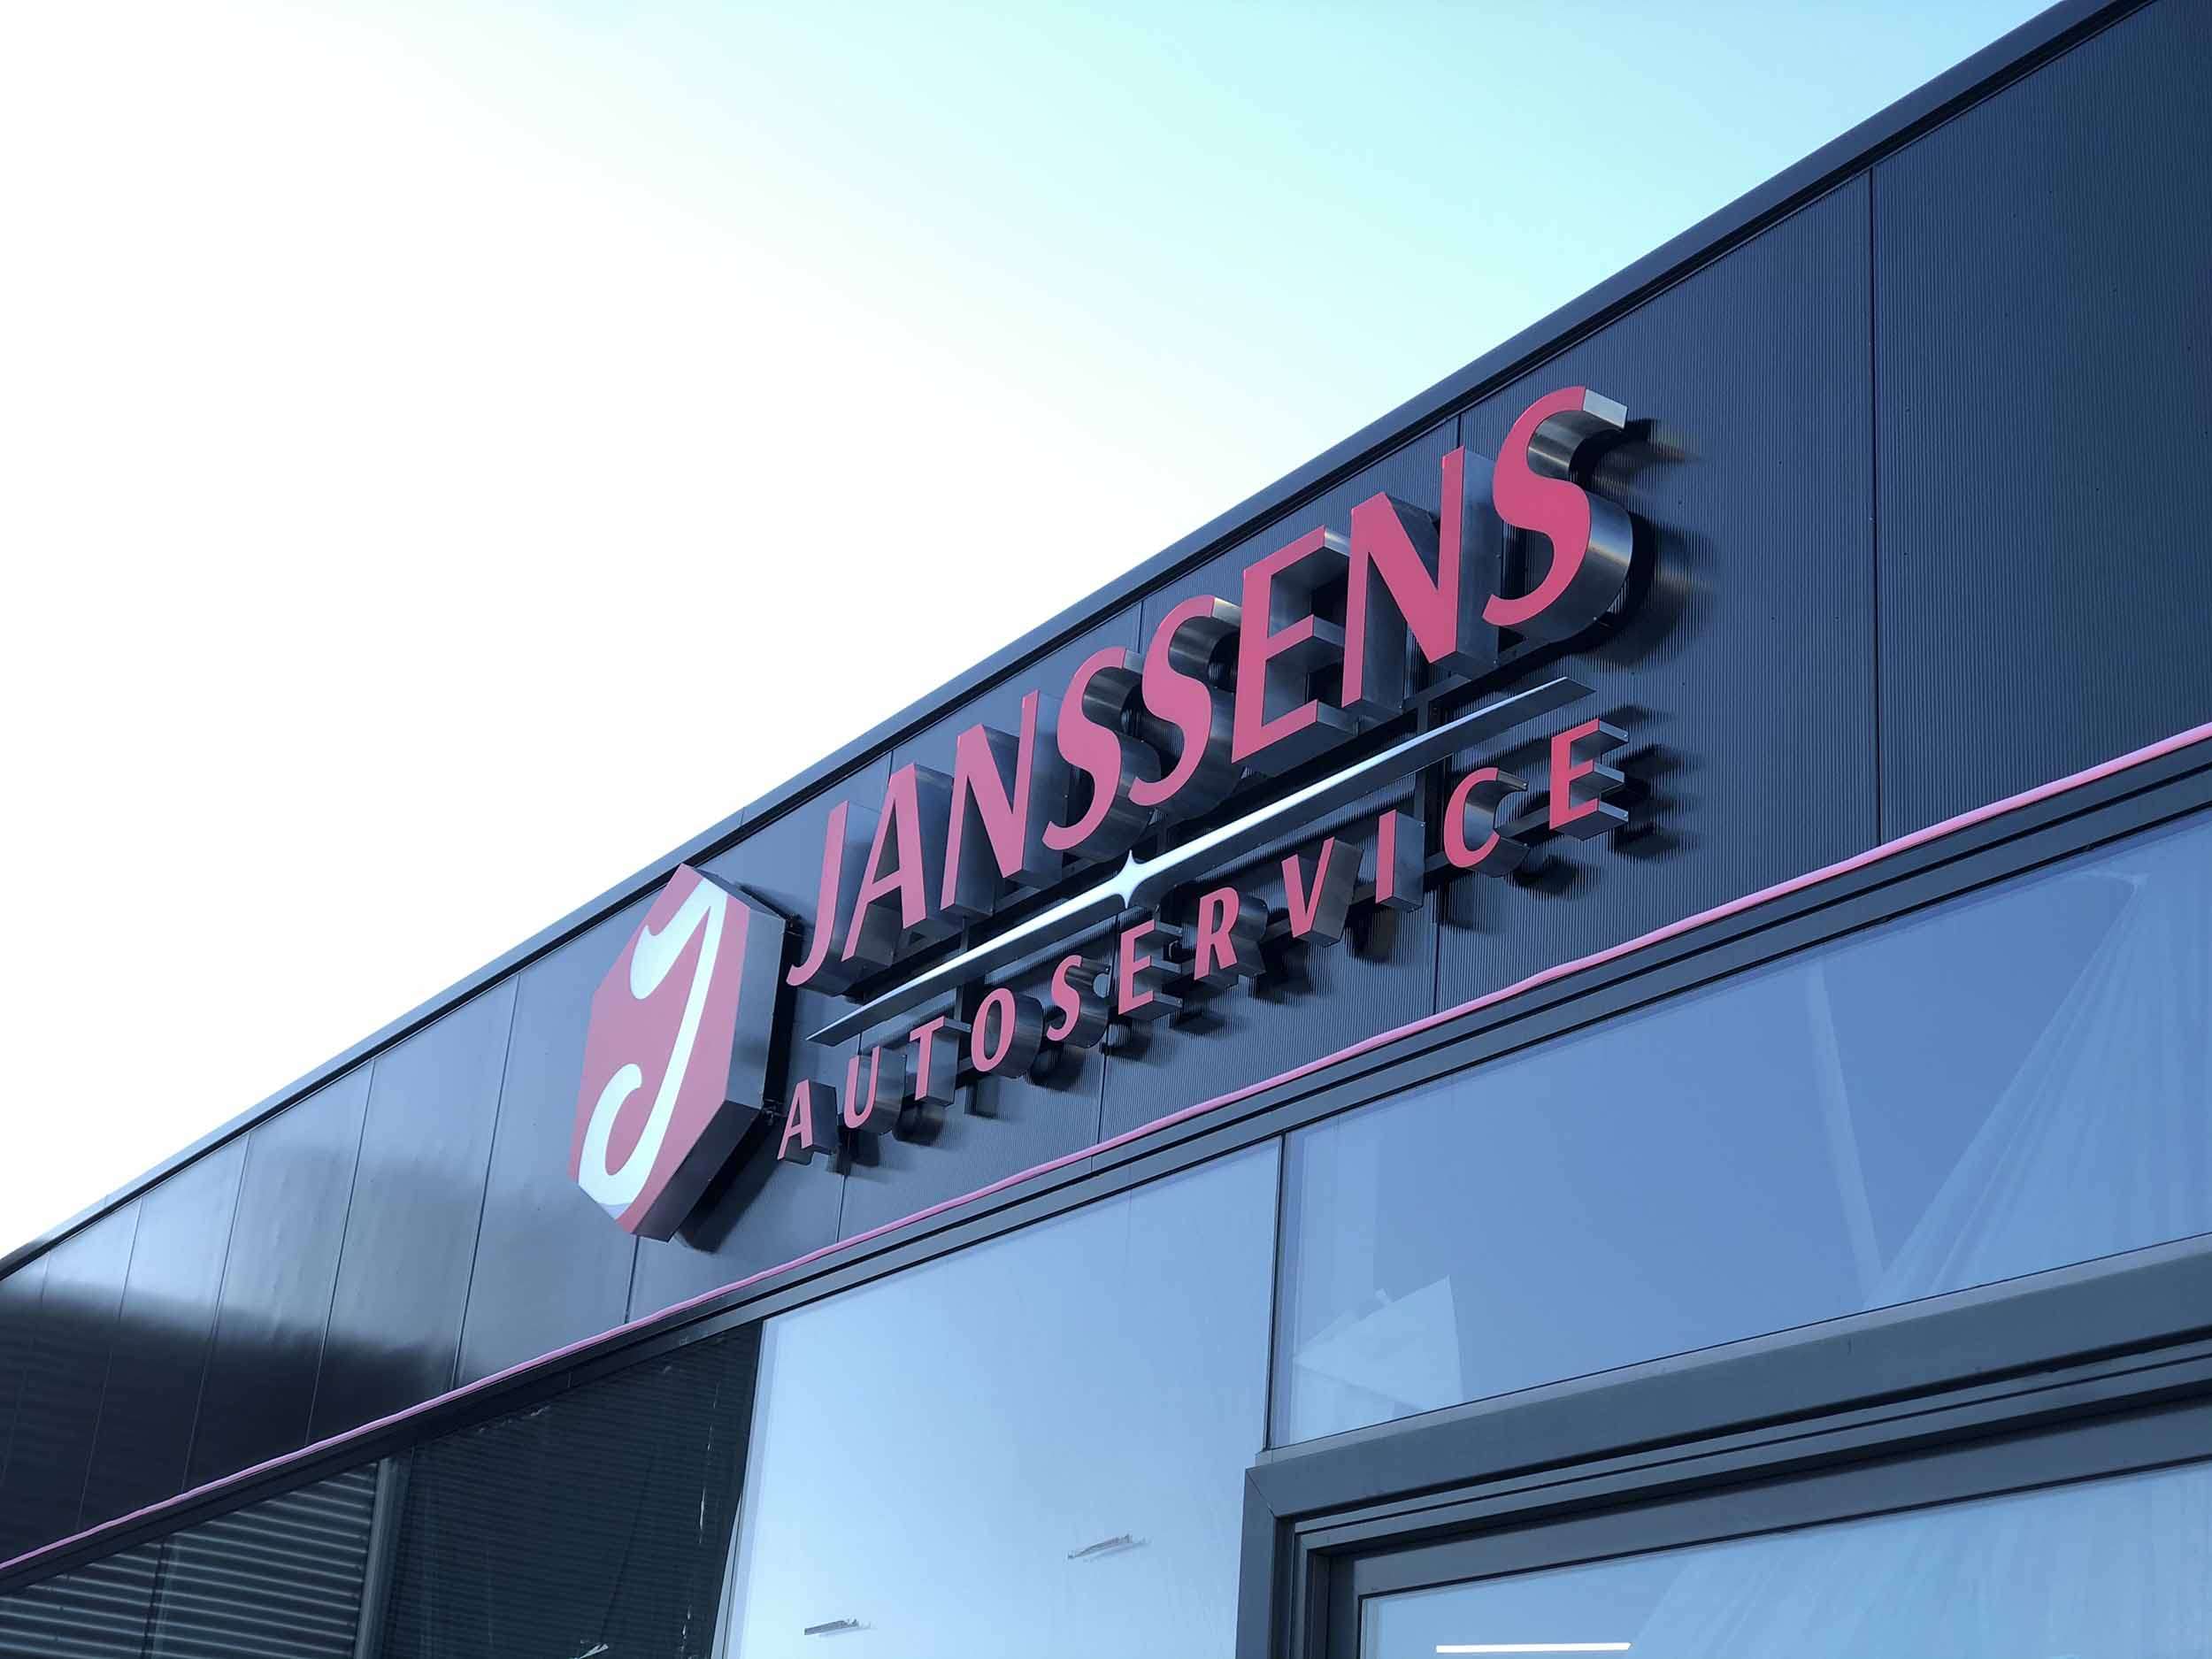 Lichtreclame uit Janssens Autoservice Venlo